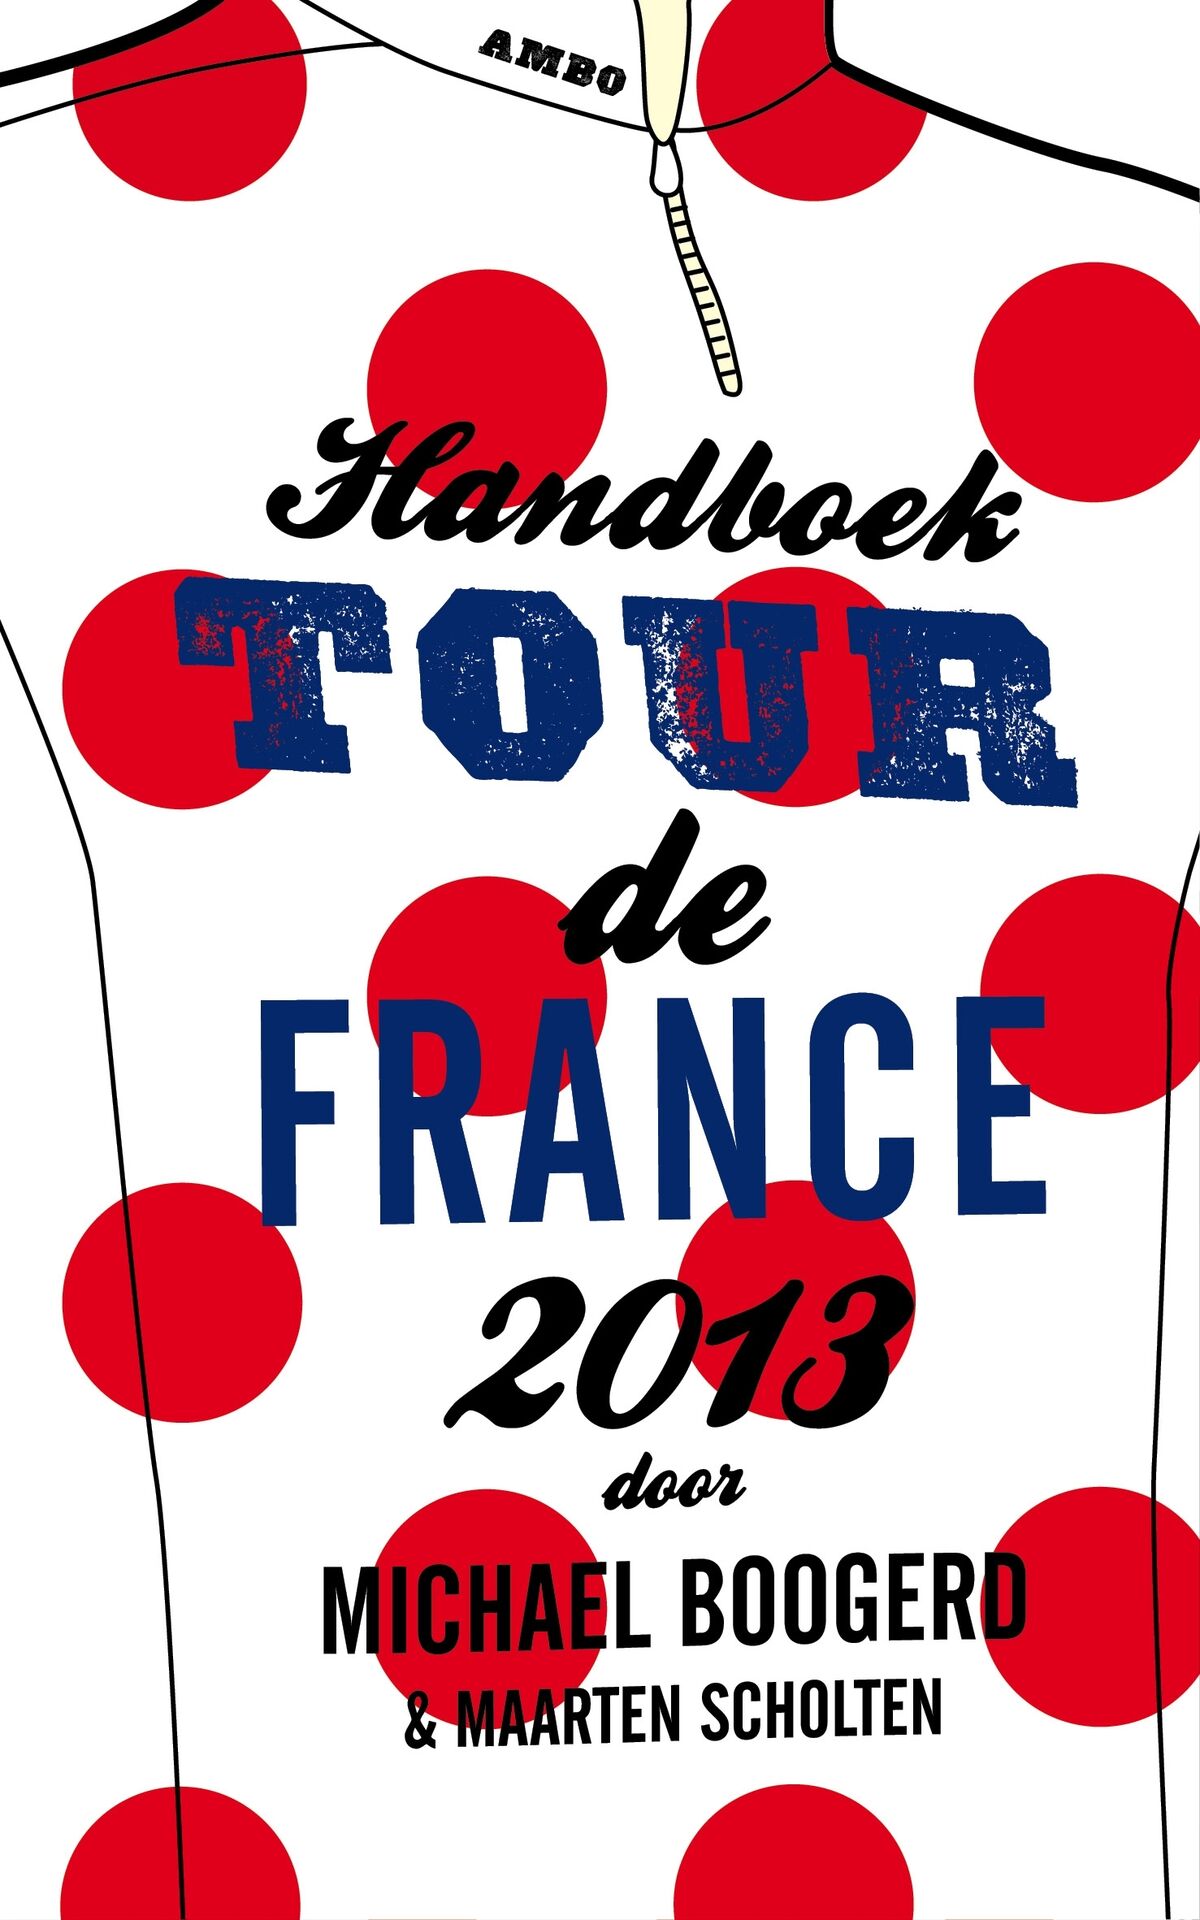 Michael Boogerd signeert Handboek Tour de France 2013